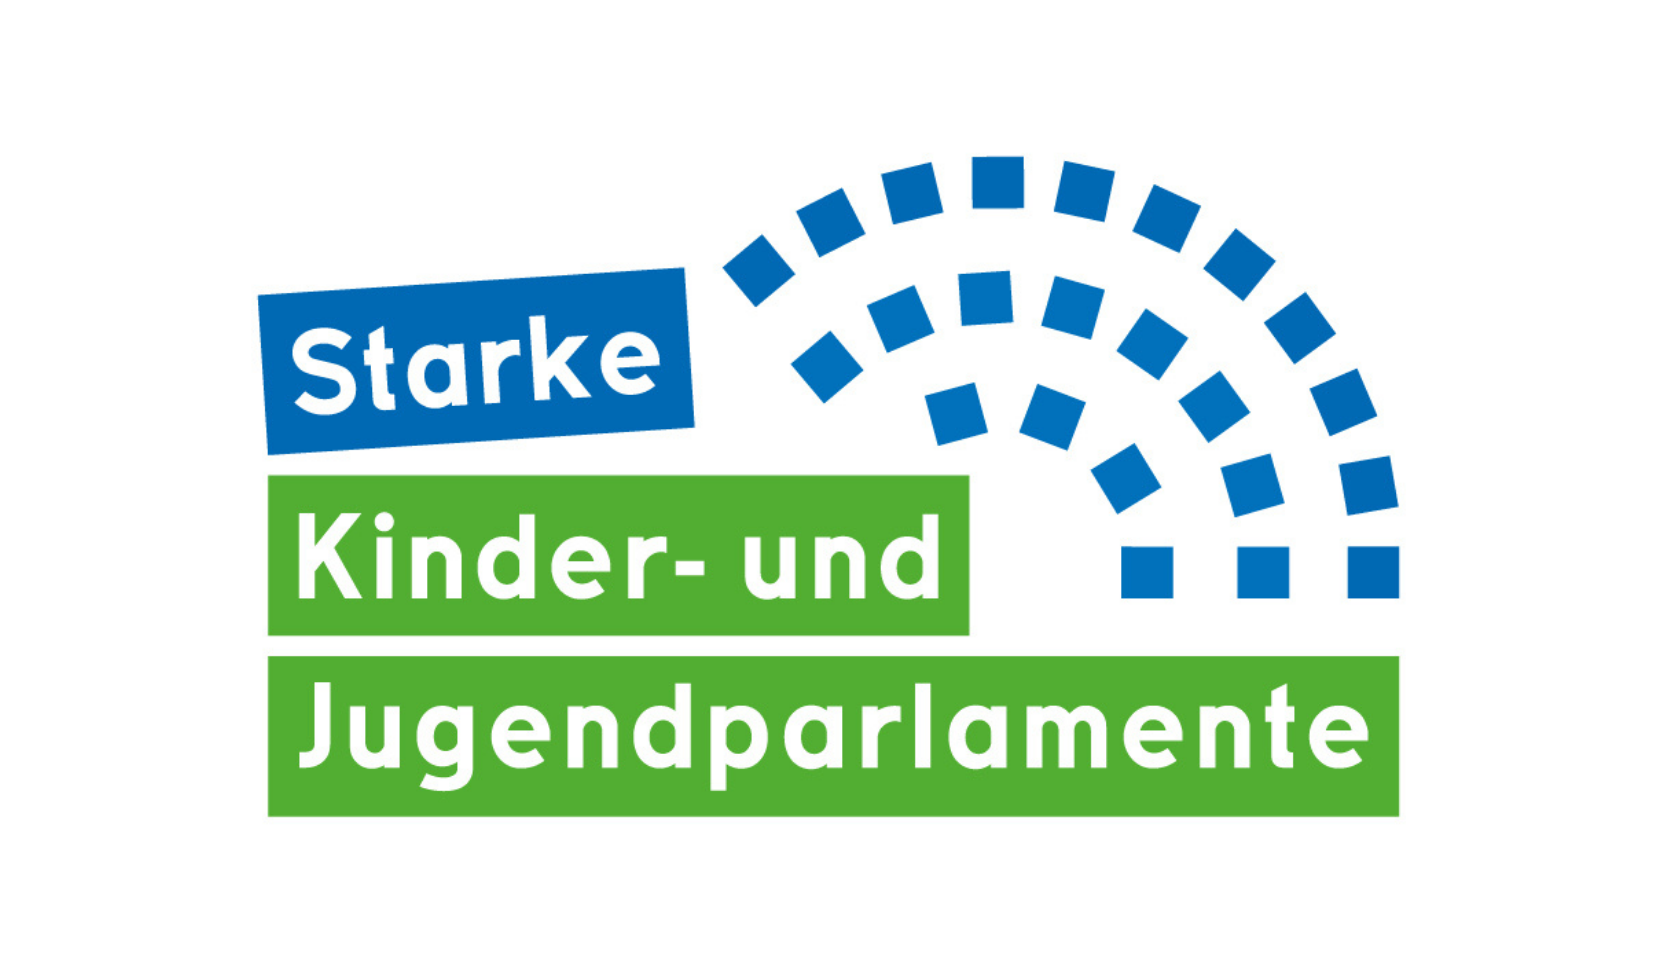 Die Abbildung zeigt das Logo der Initative Starke Kinder- und Jugendparlamente © DKHW